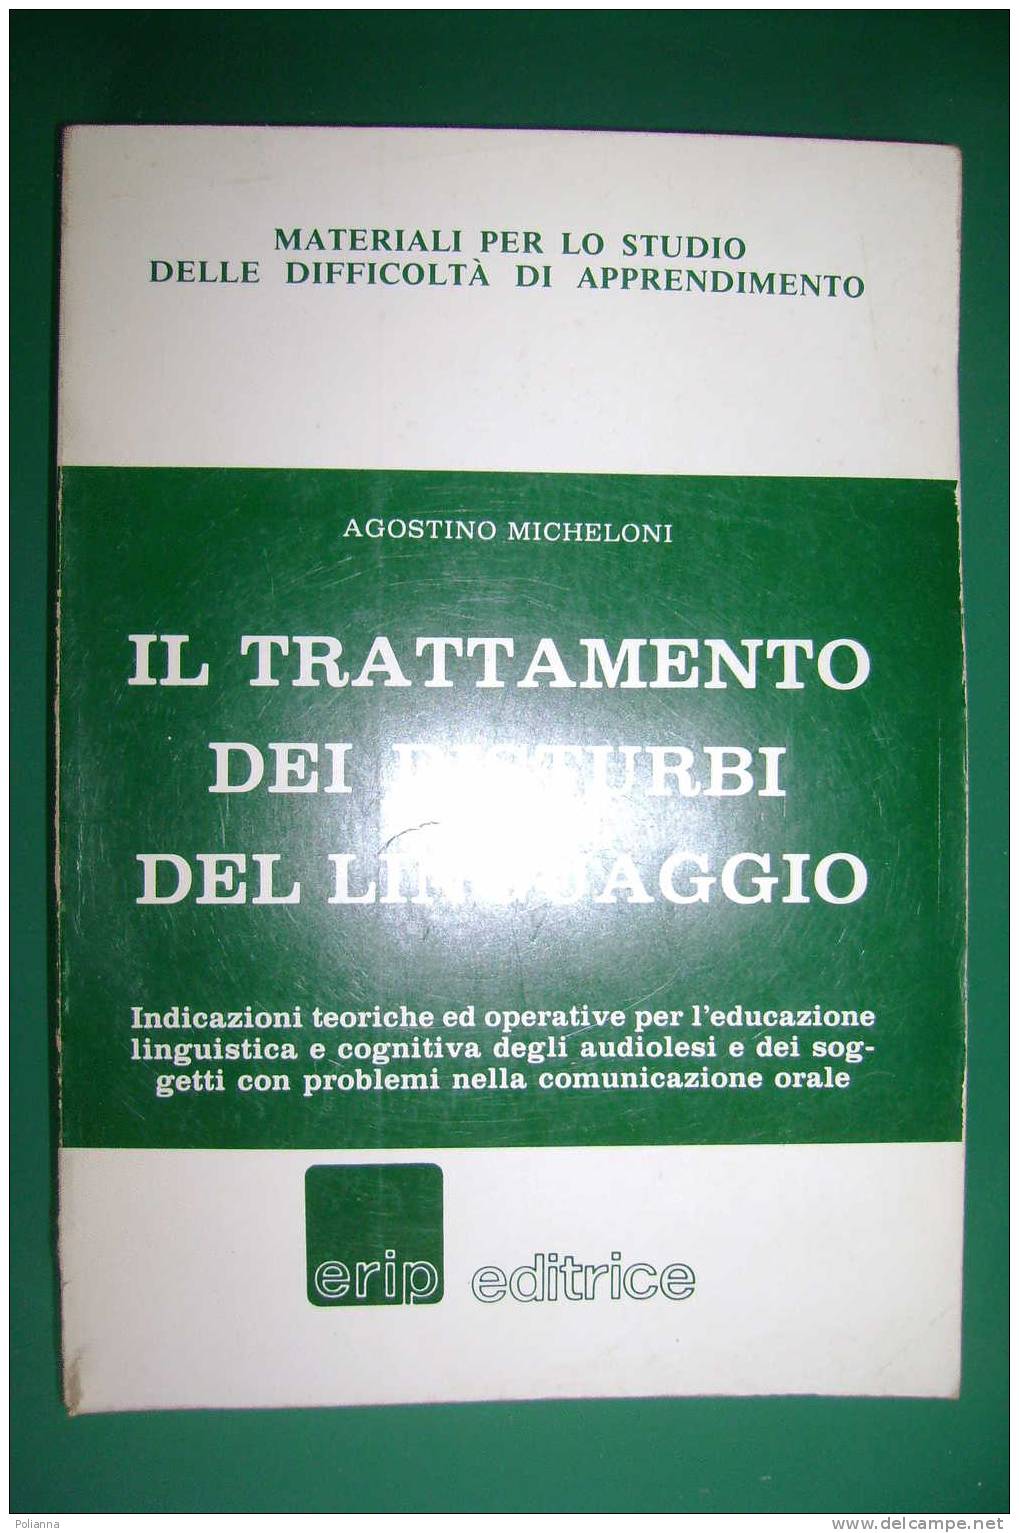 PDW/29 Micheloni TRATTAMENTO DISTURBI LINGUAGGIO Erip 1984 - Medicina, Psicologia